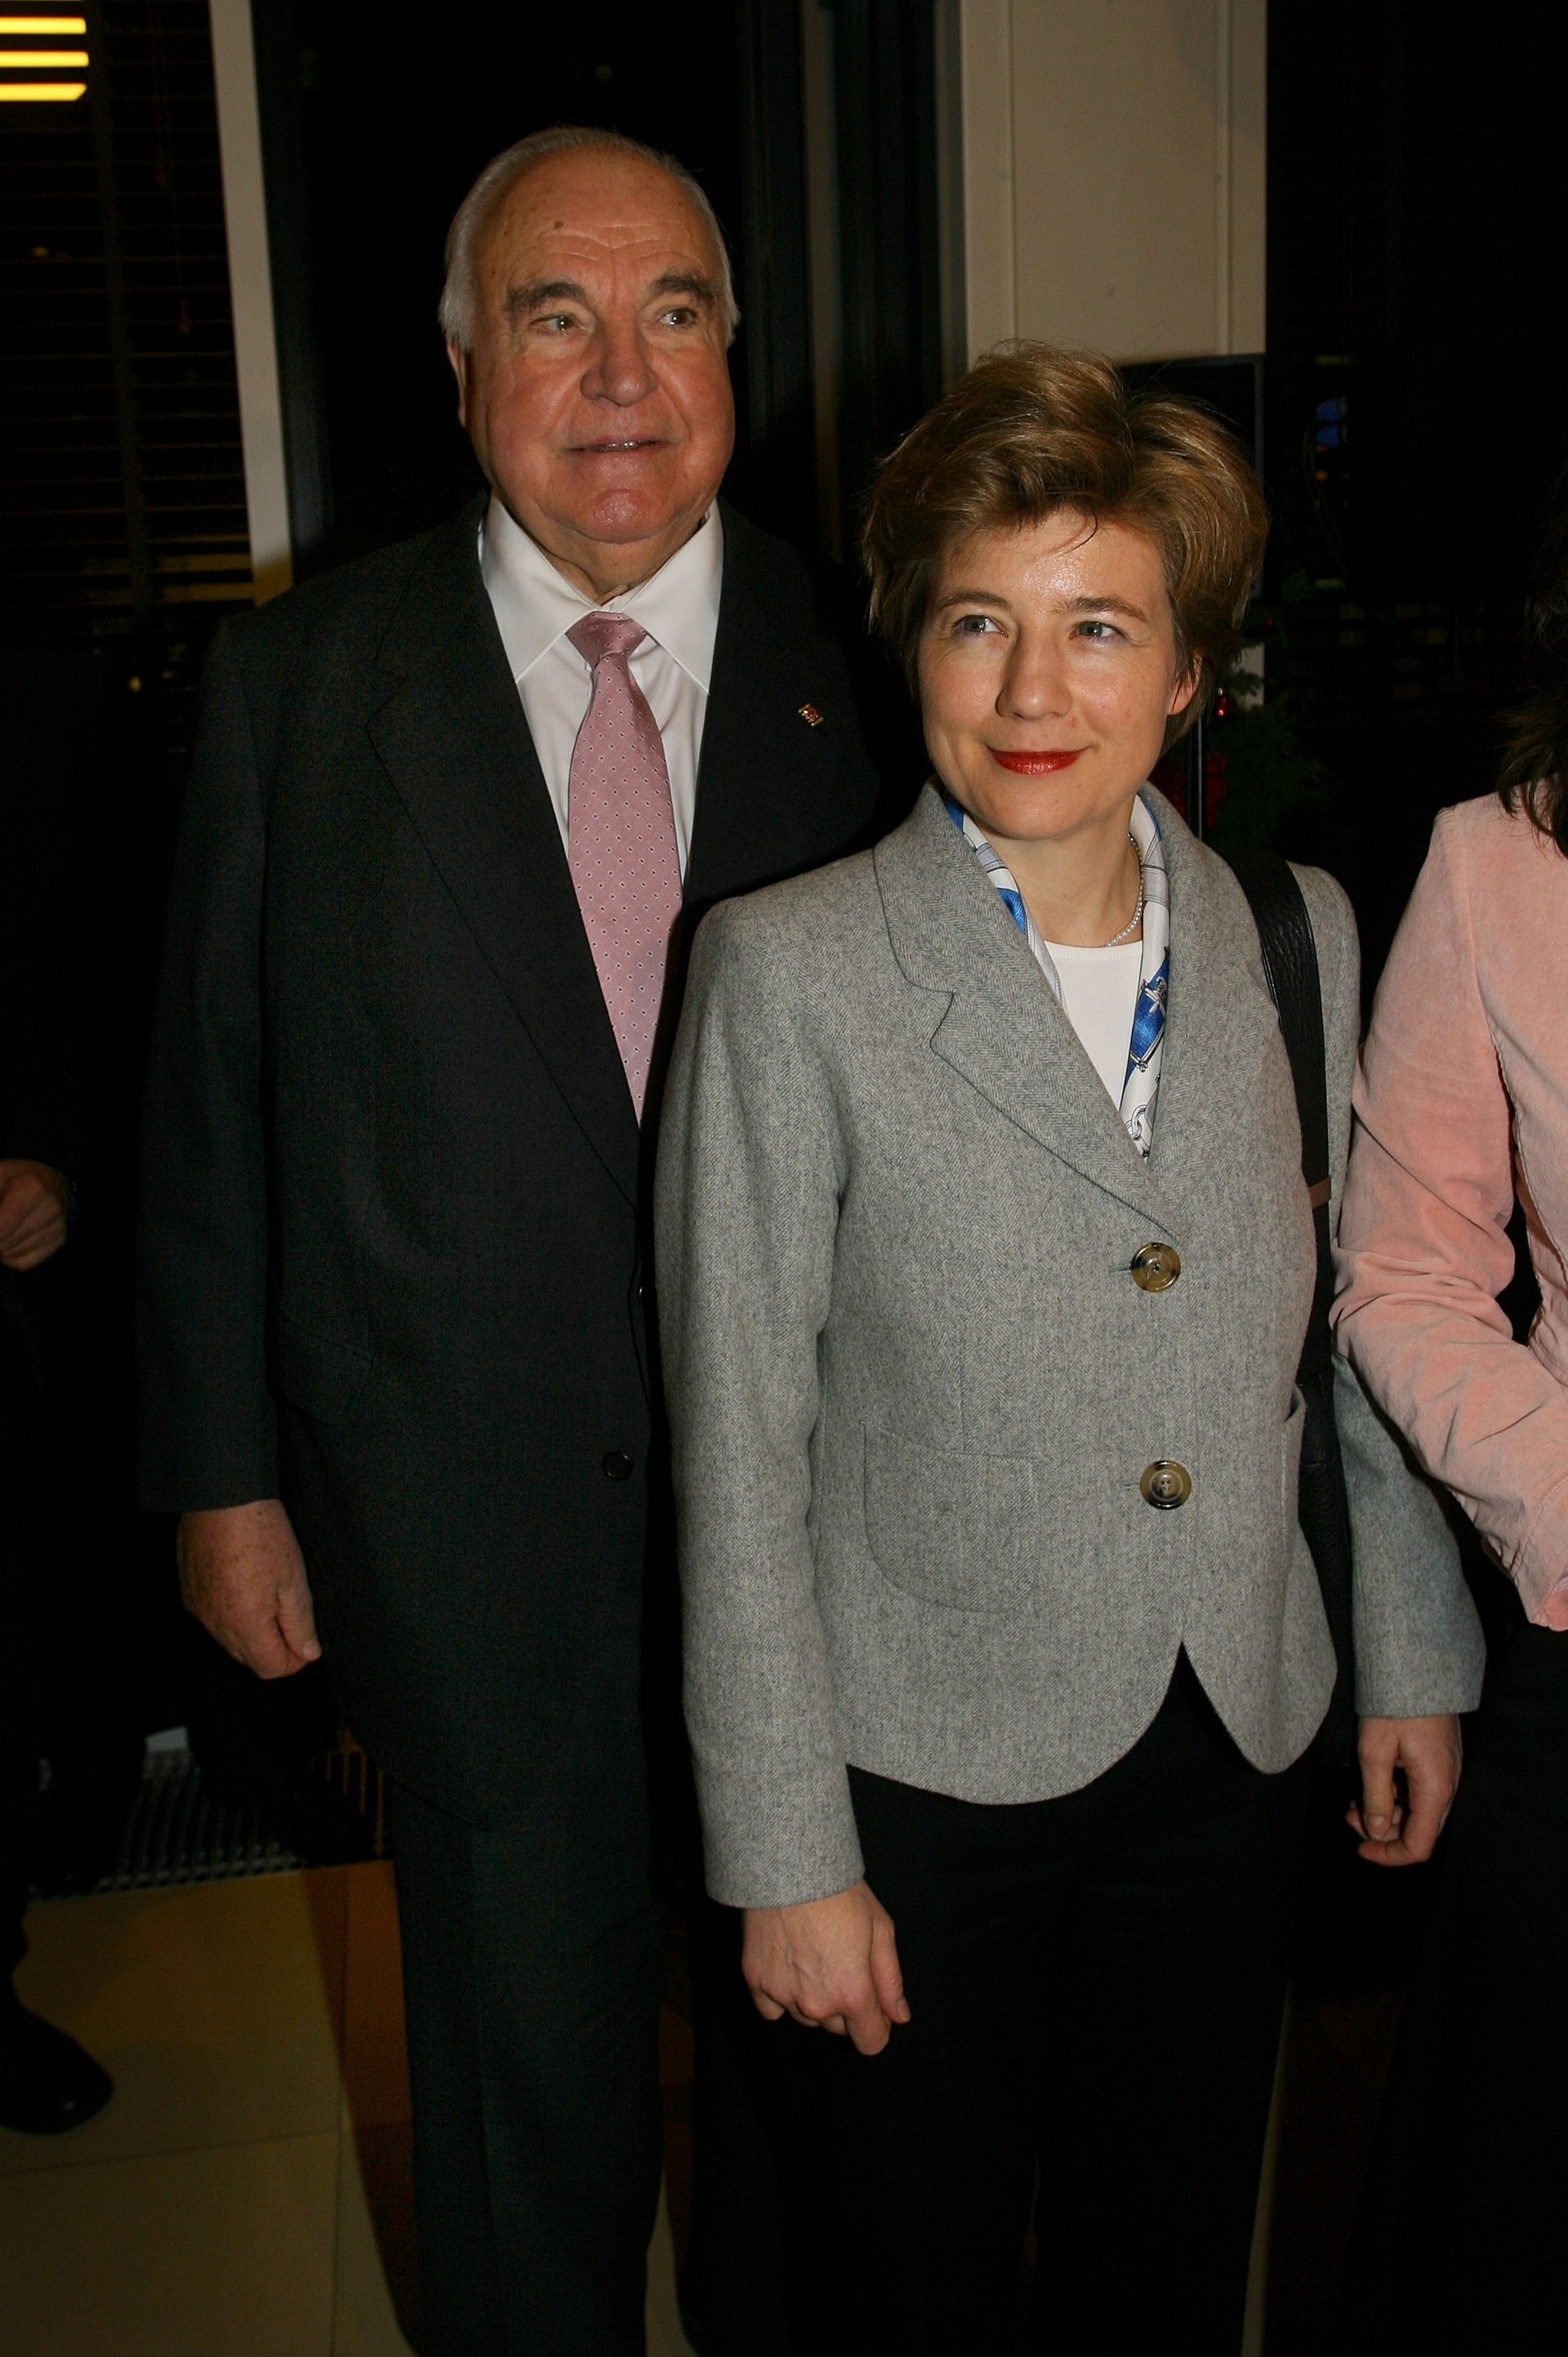 Aufnahme von Helmut Kohl und Maike Richter